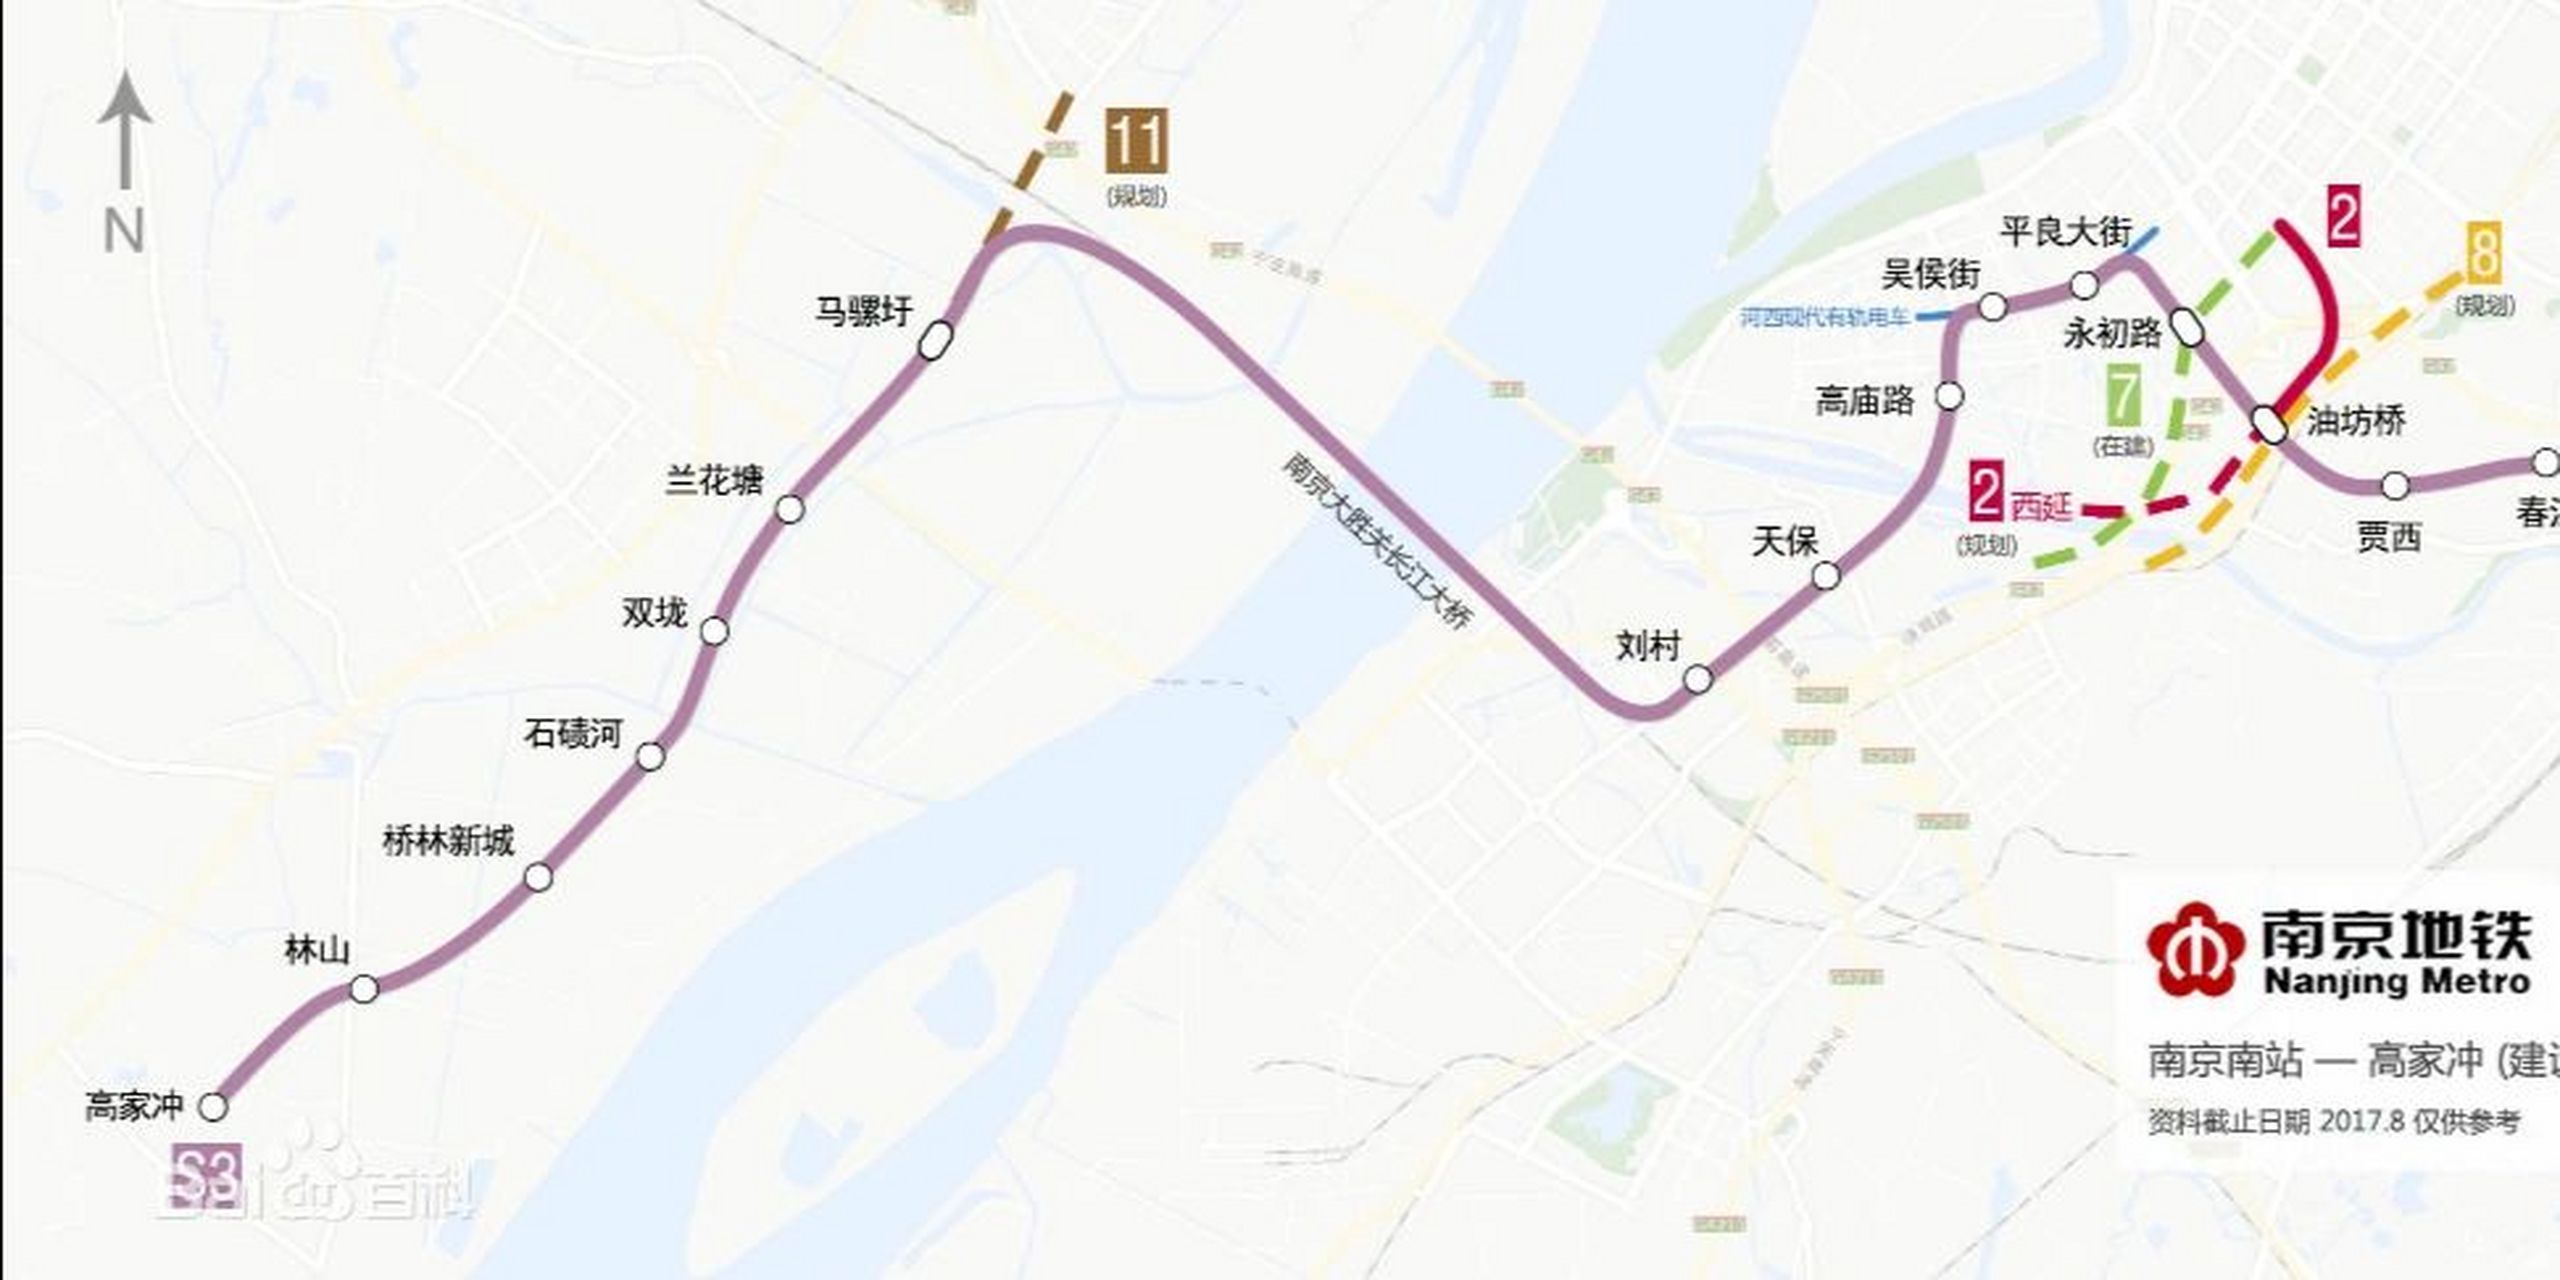 s3 号线 南京地铁s3号线(又称宁和线)是南京地铁第八条开通的地铁线路